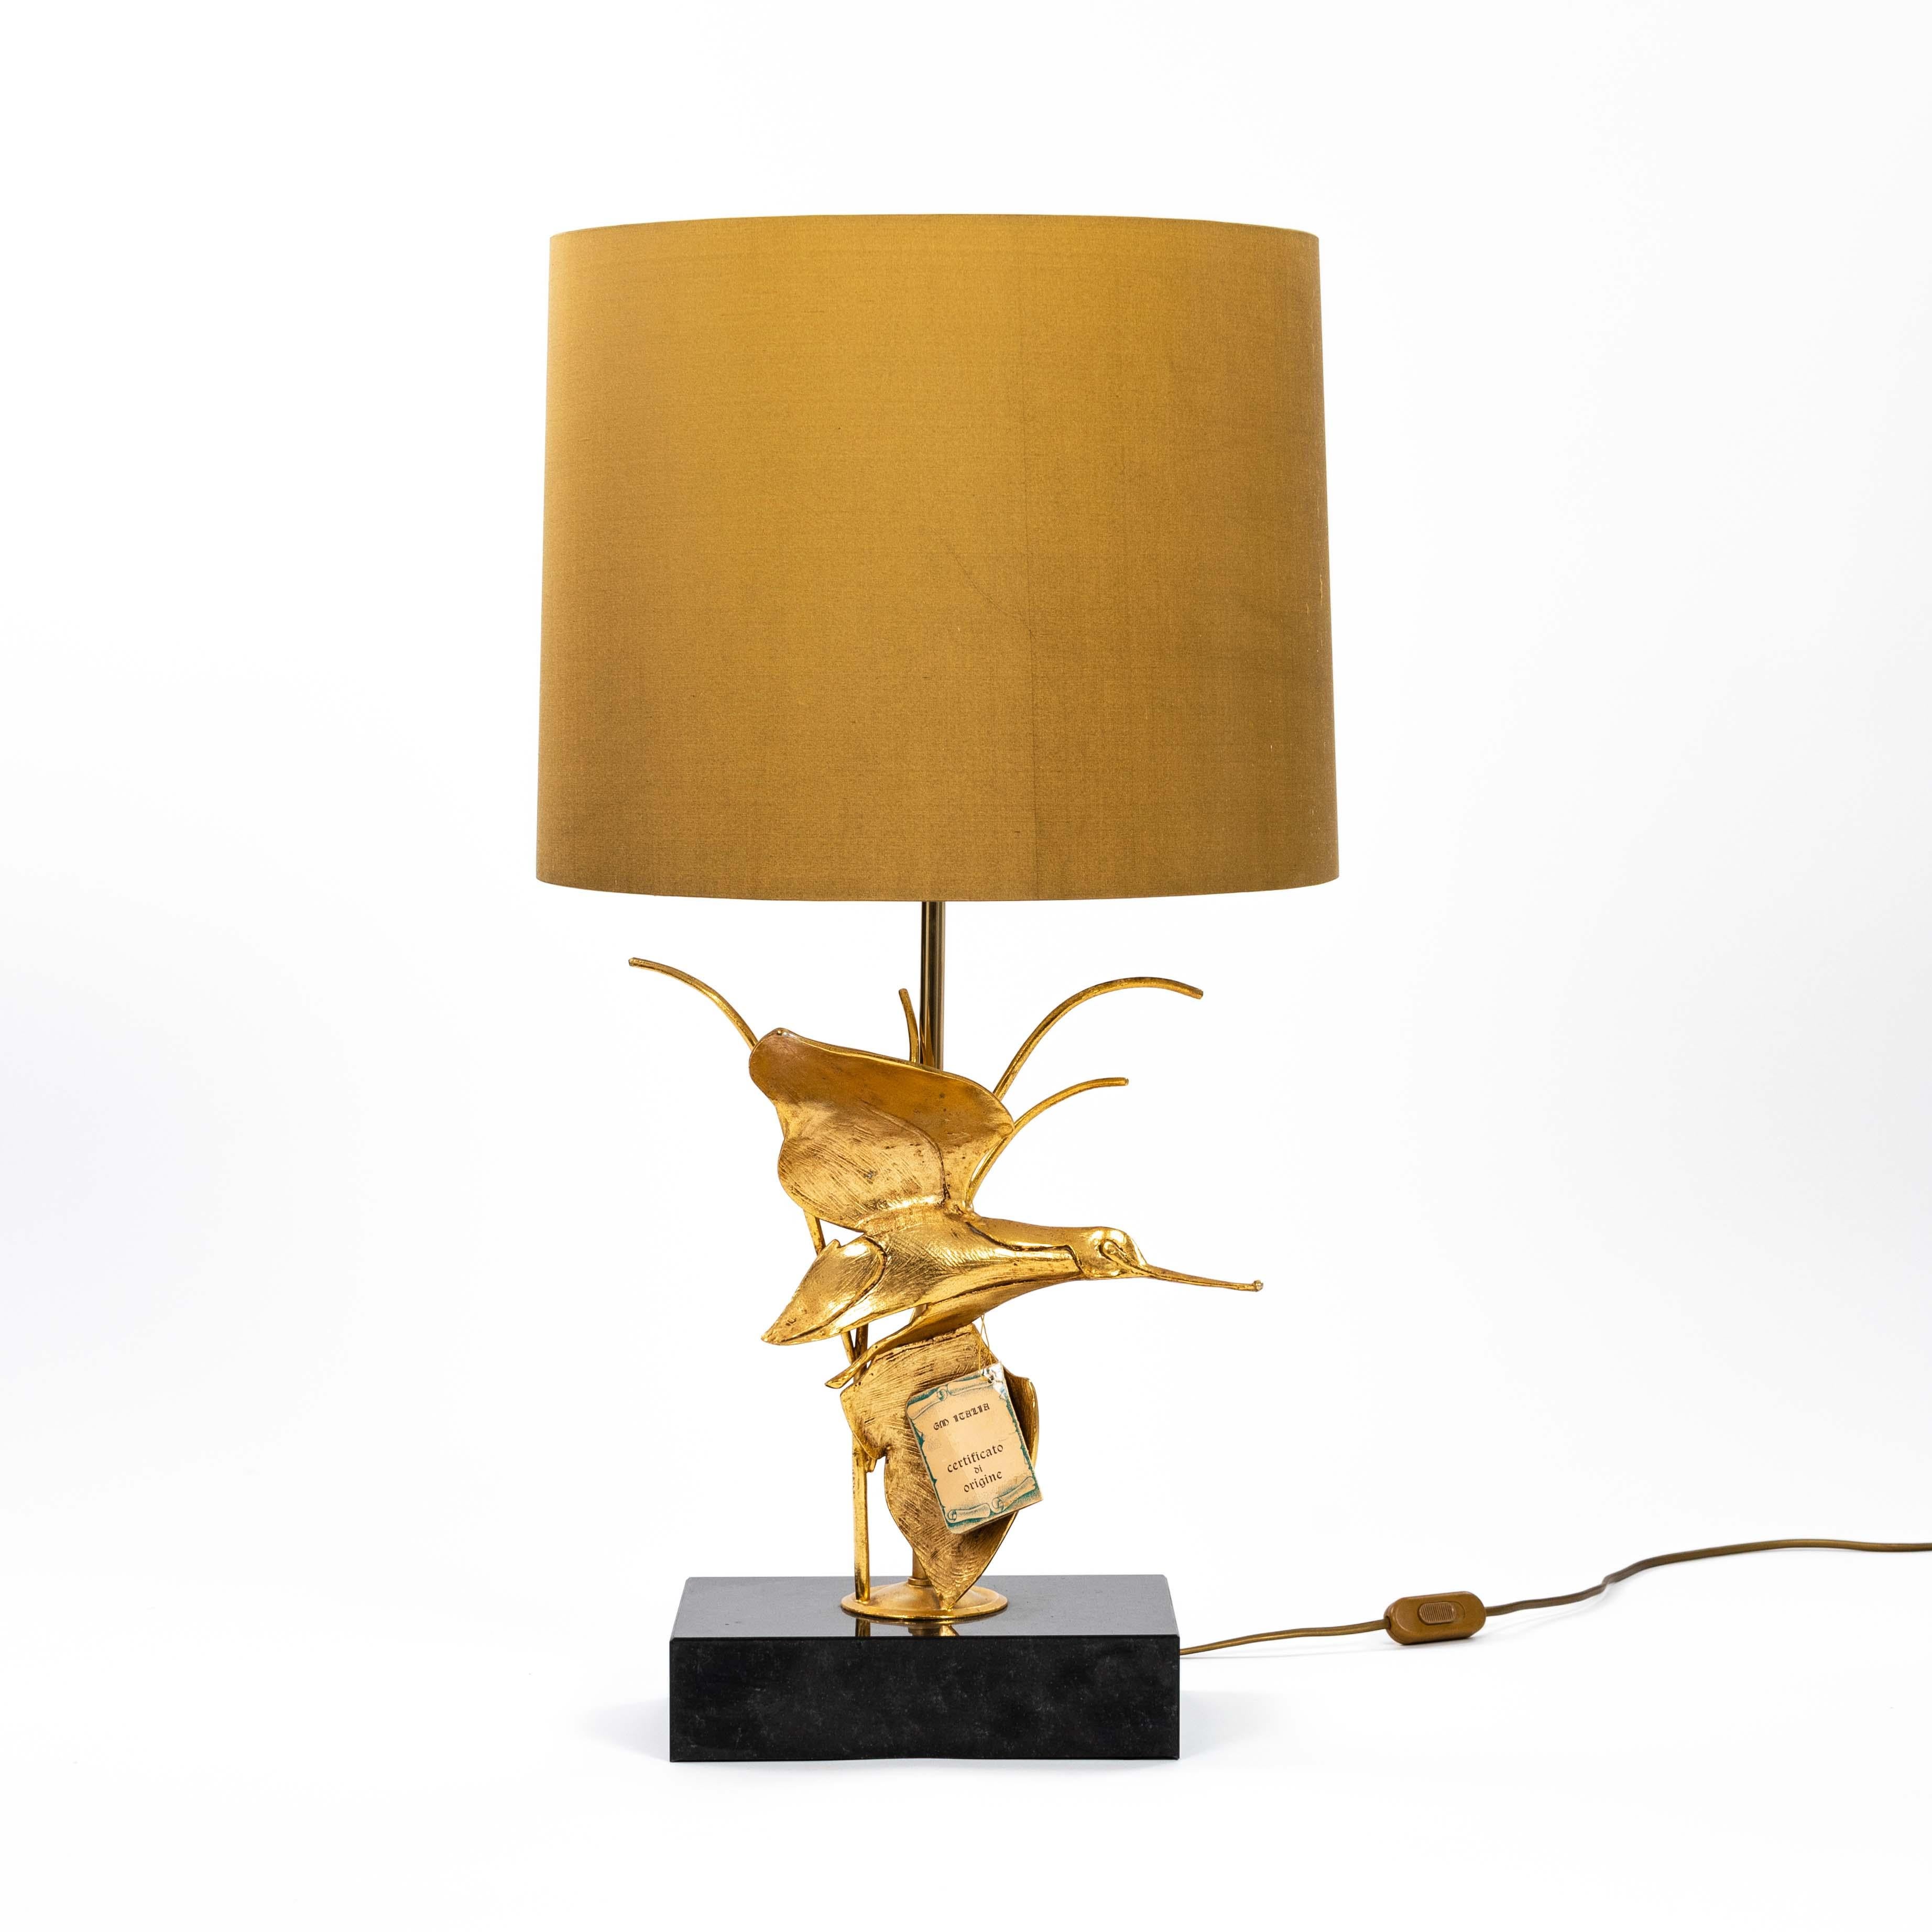 Lampe de table italienne du milieu du siècle en laiton sculpté et doré - oiseau en vol - par GM ITALIA, Firenze 
marqué d'un Label séparé.
L'objet en laiton est fixé sur un socle en marbre noir (largeur 23,5 cm x profondeur 15,5 cm x hauteur 5,5